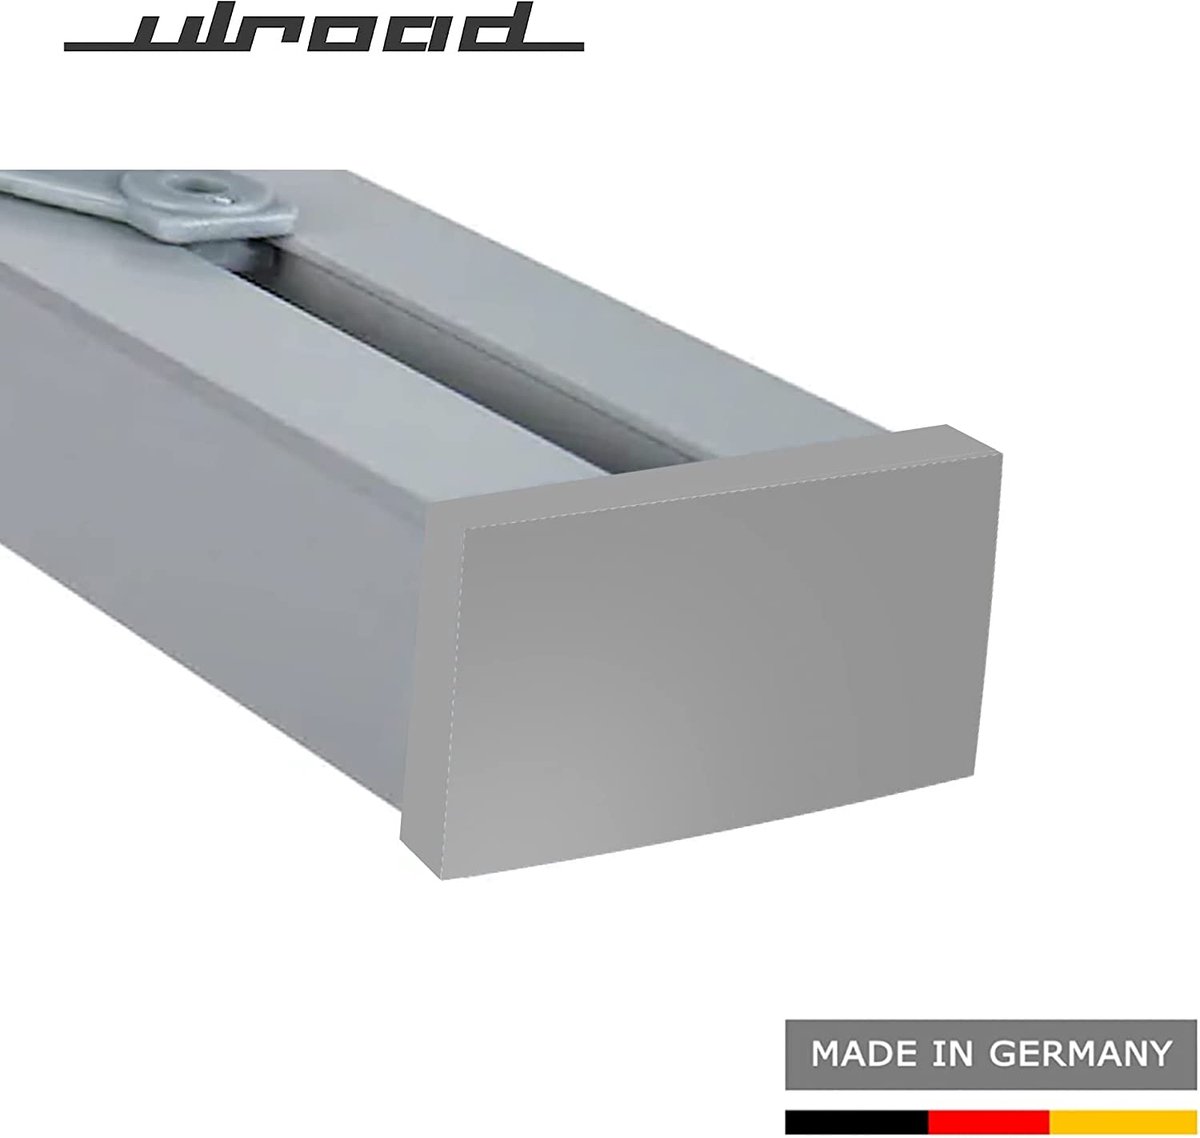 ULROAD 2 stuks eindkappen compatibel met Ikea Vidga looplijst, gordijnlijst, 3-loops looprail lijst gordijnrail gordijn